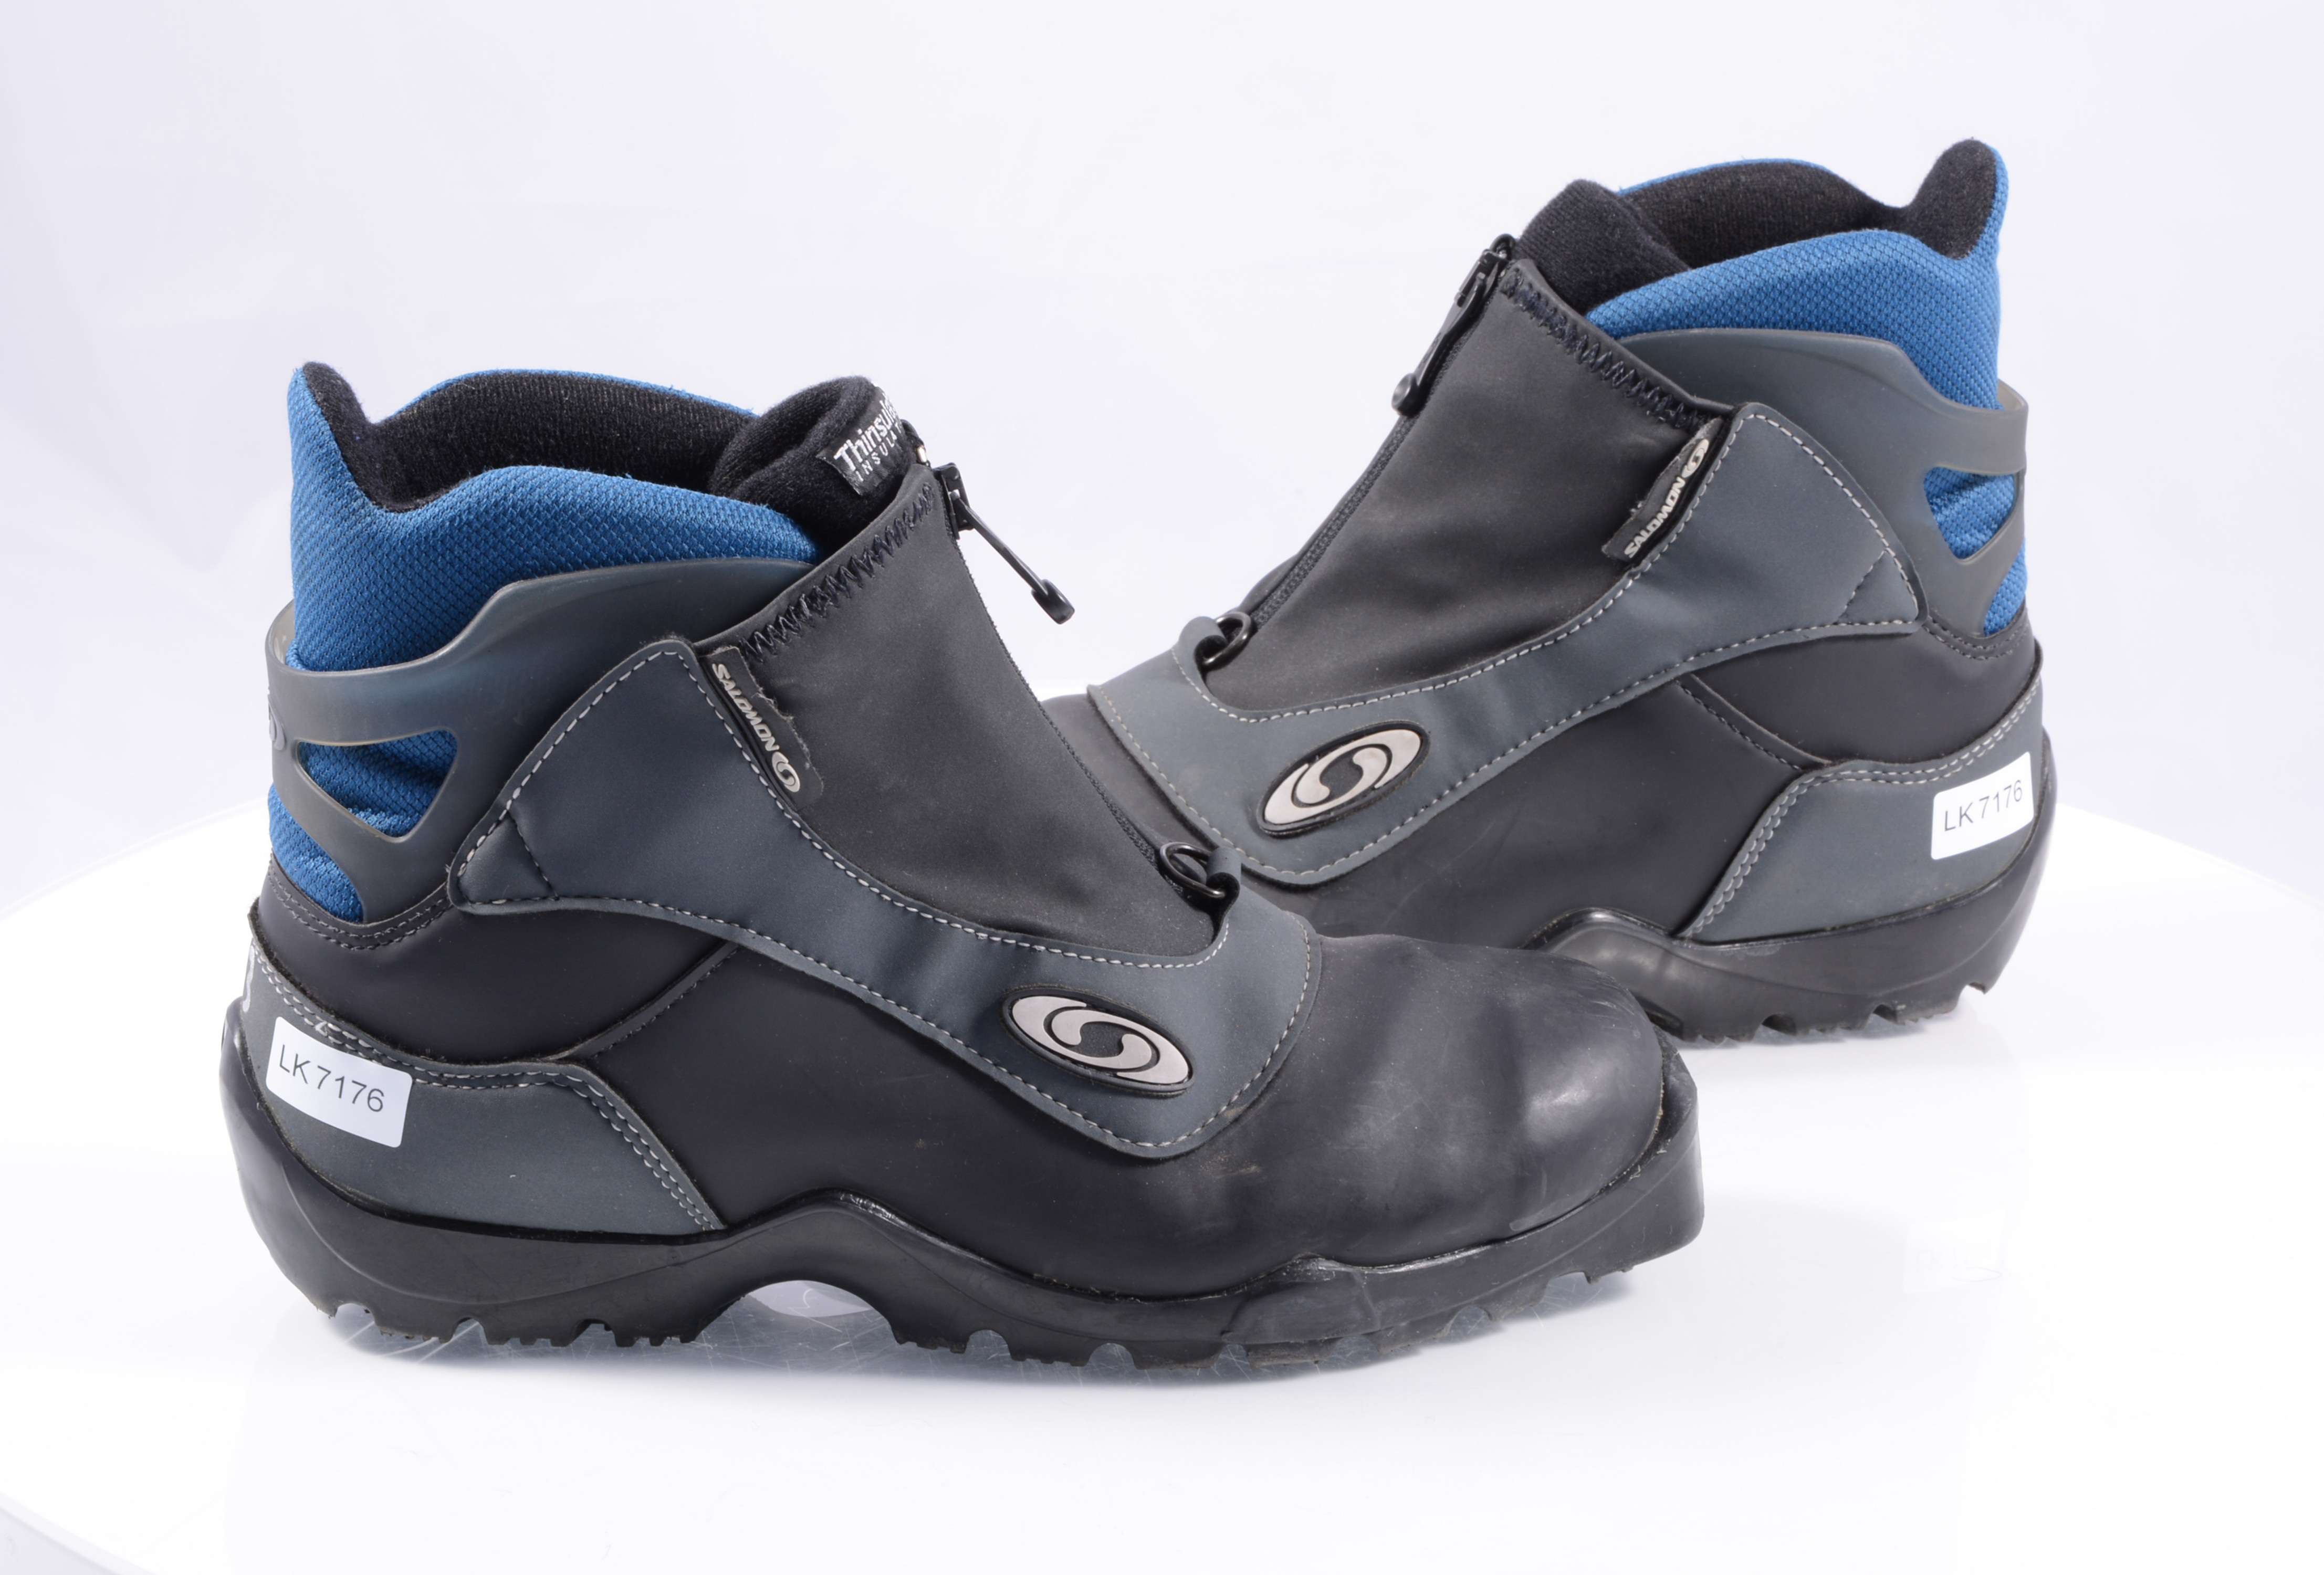 Verandert in Rust uit afgewerkt cross-country boots SALOMON, SNS profile, Black/Blue ( TOP condition ) -  Mardosport.com